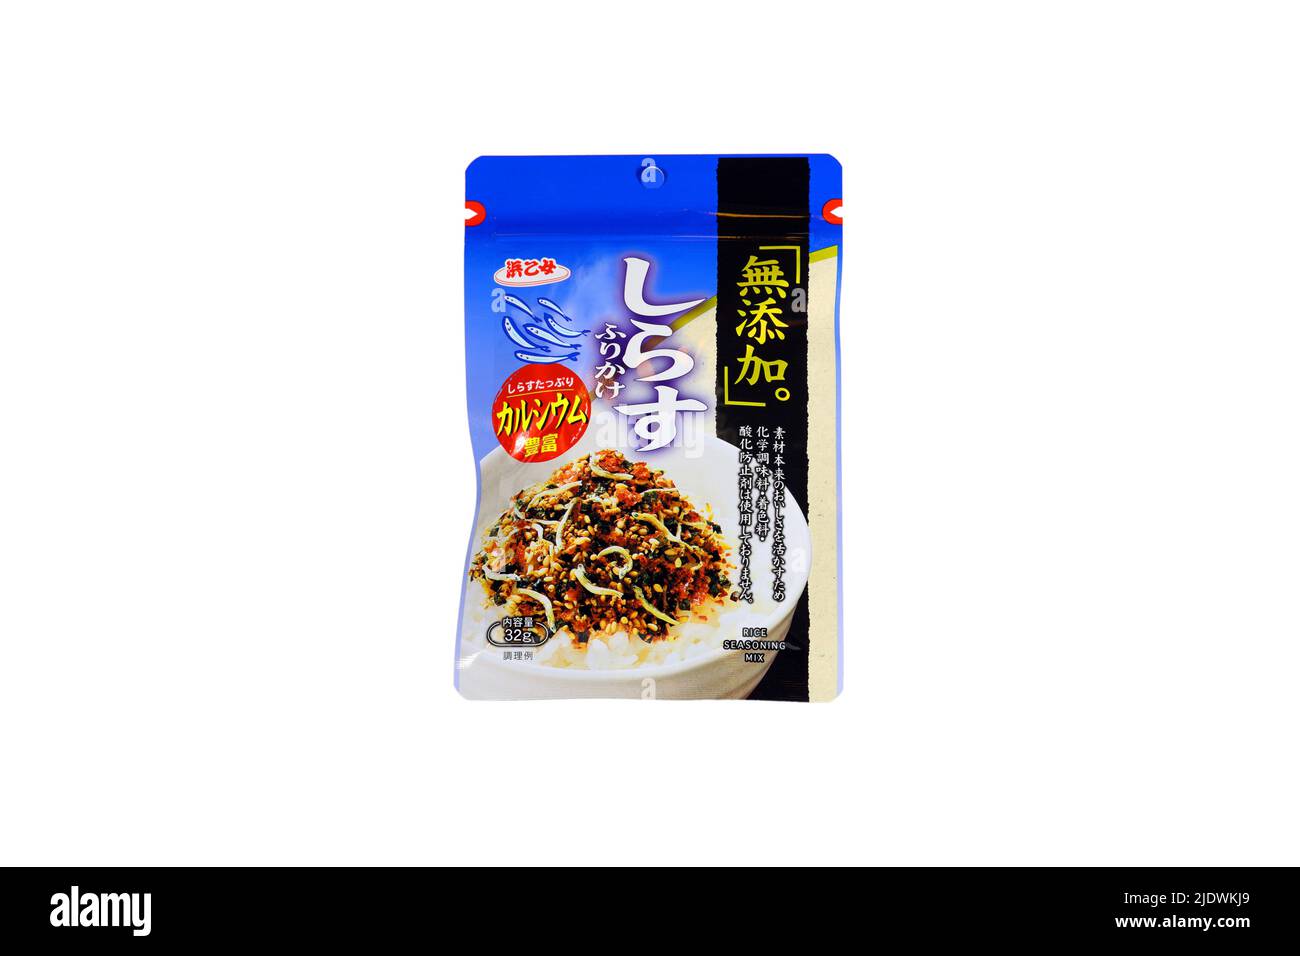 Ein Paket von Hamatome 浜乙女 Marke Shirasu Furikake Reis Gewürzmischung isoliert auf einem weißen Hintergrund. Ausschnitt für Illustration und redaktionelle Verwendung. Stockfoto